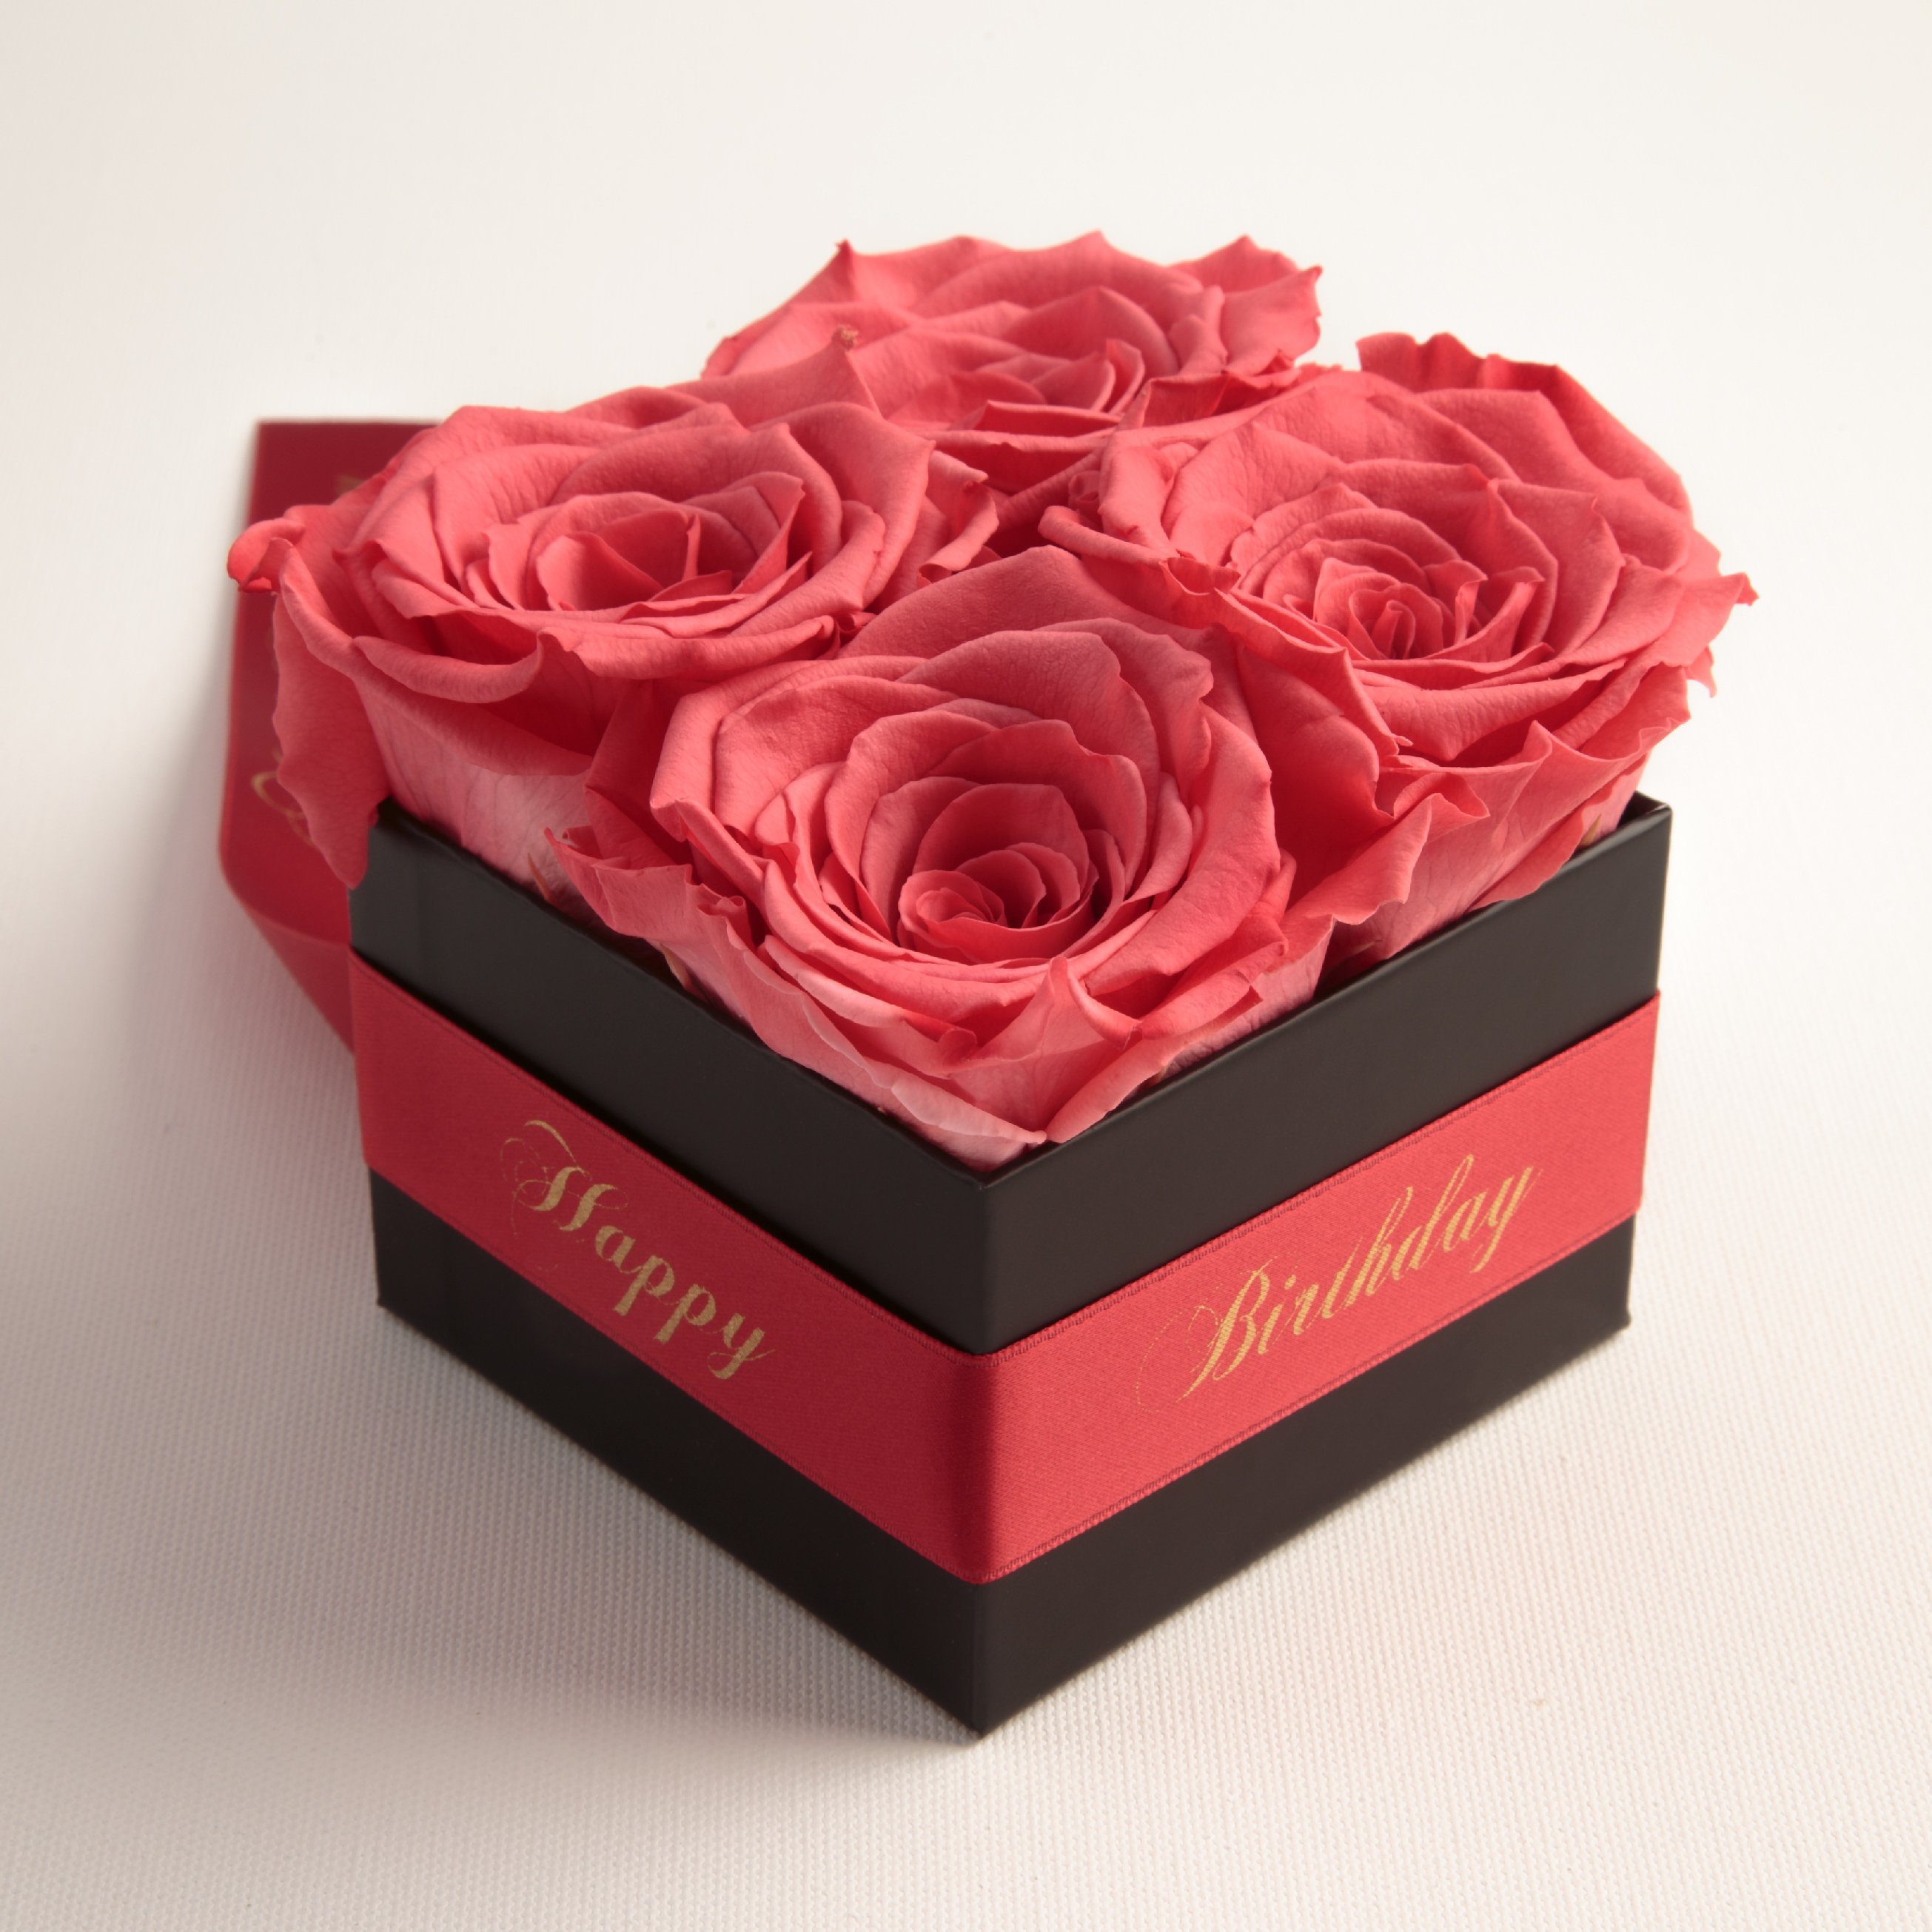 Kunstblume Infinity Rosenbox Happy Geschenk korall-rot Rosen ROSEMARIE Rose, echte cm, Jahre Höhe 8.5 haltbar Heidelberg, Birthday Frauen 3 Geburtstag SCHULZ für